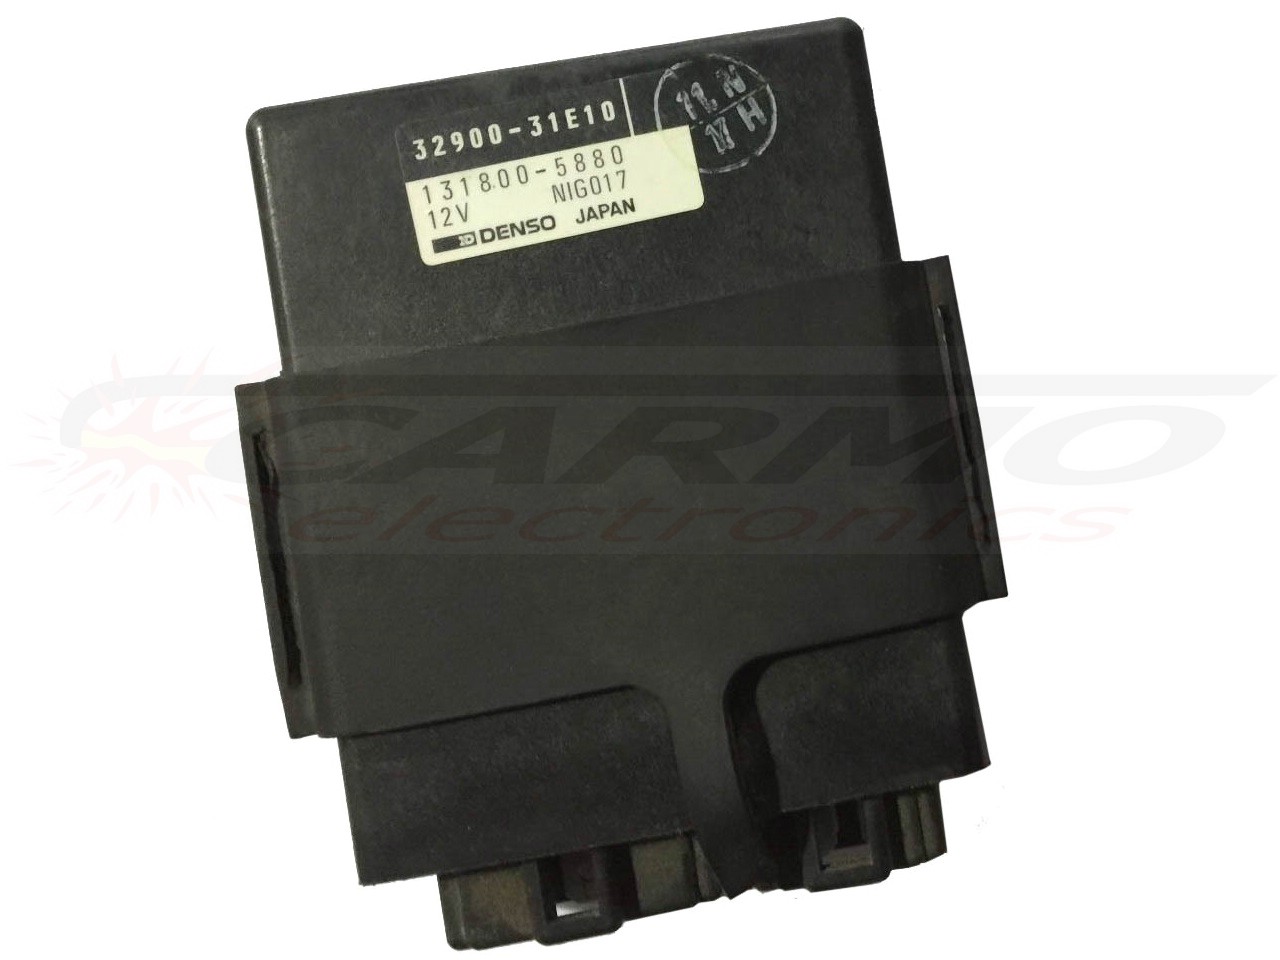 RF900 RF900RV CDI igniter (32900-31E00, -31E10, -31E20, -31E30)